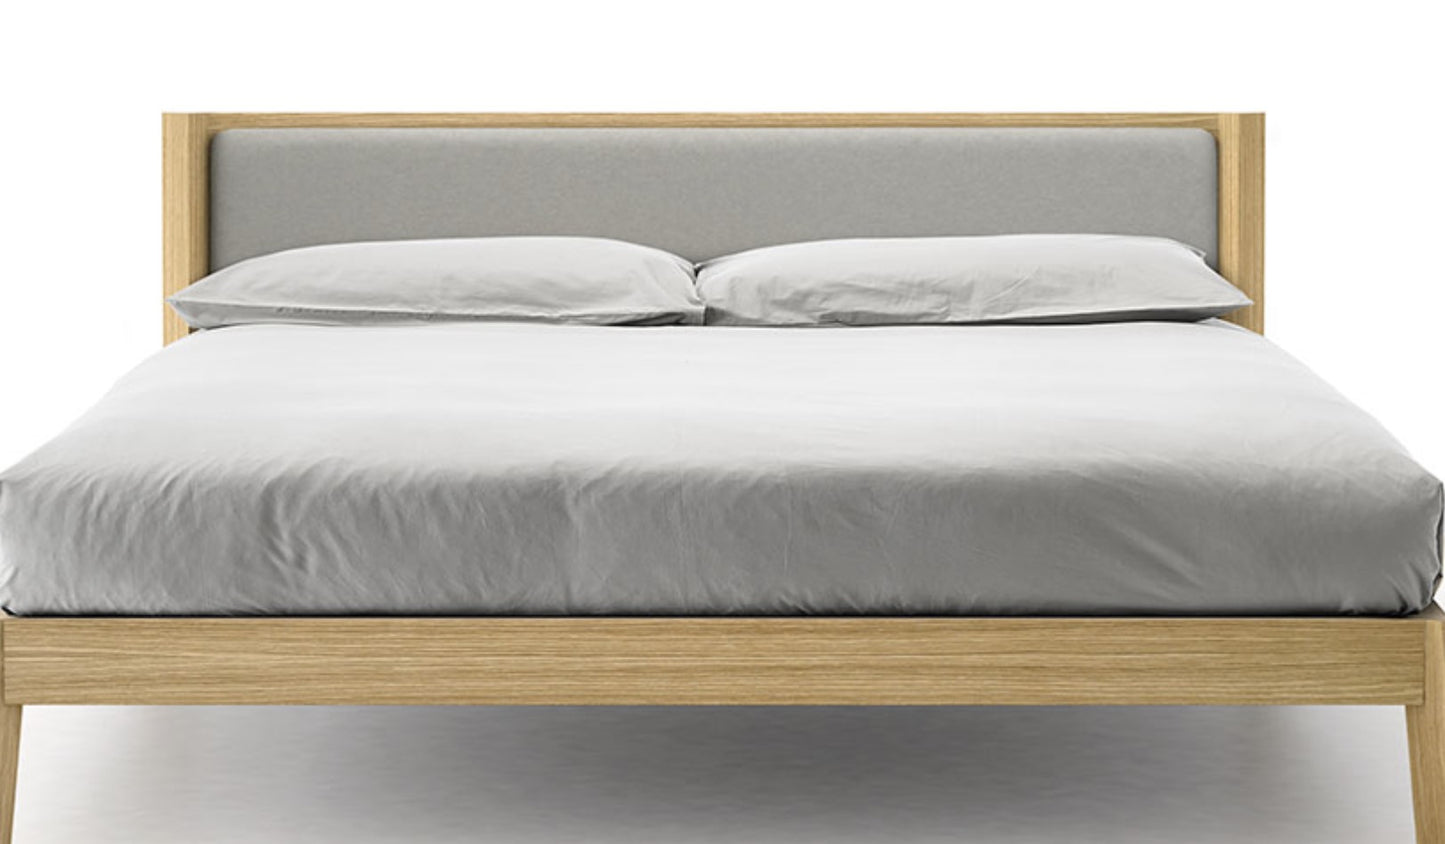 BREDA l Bed by PUNT - $3,830.00